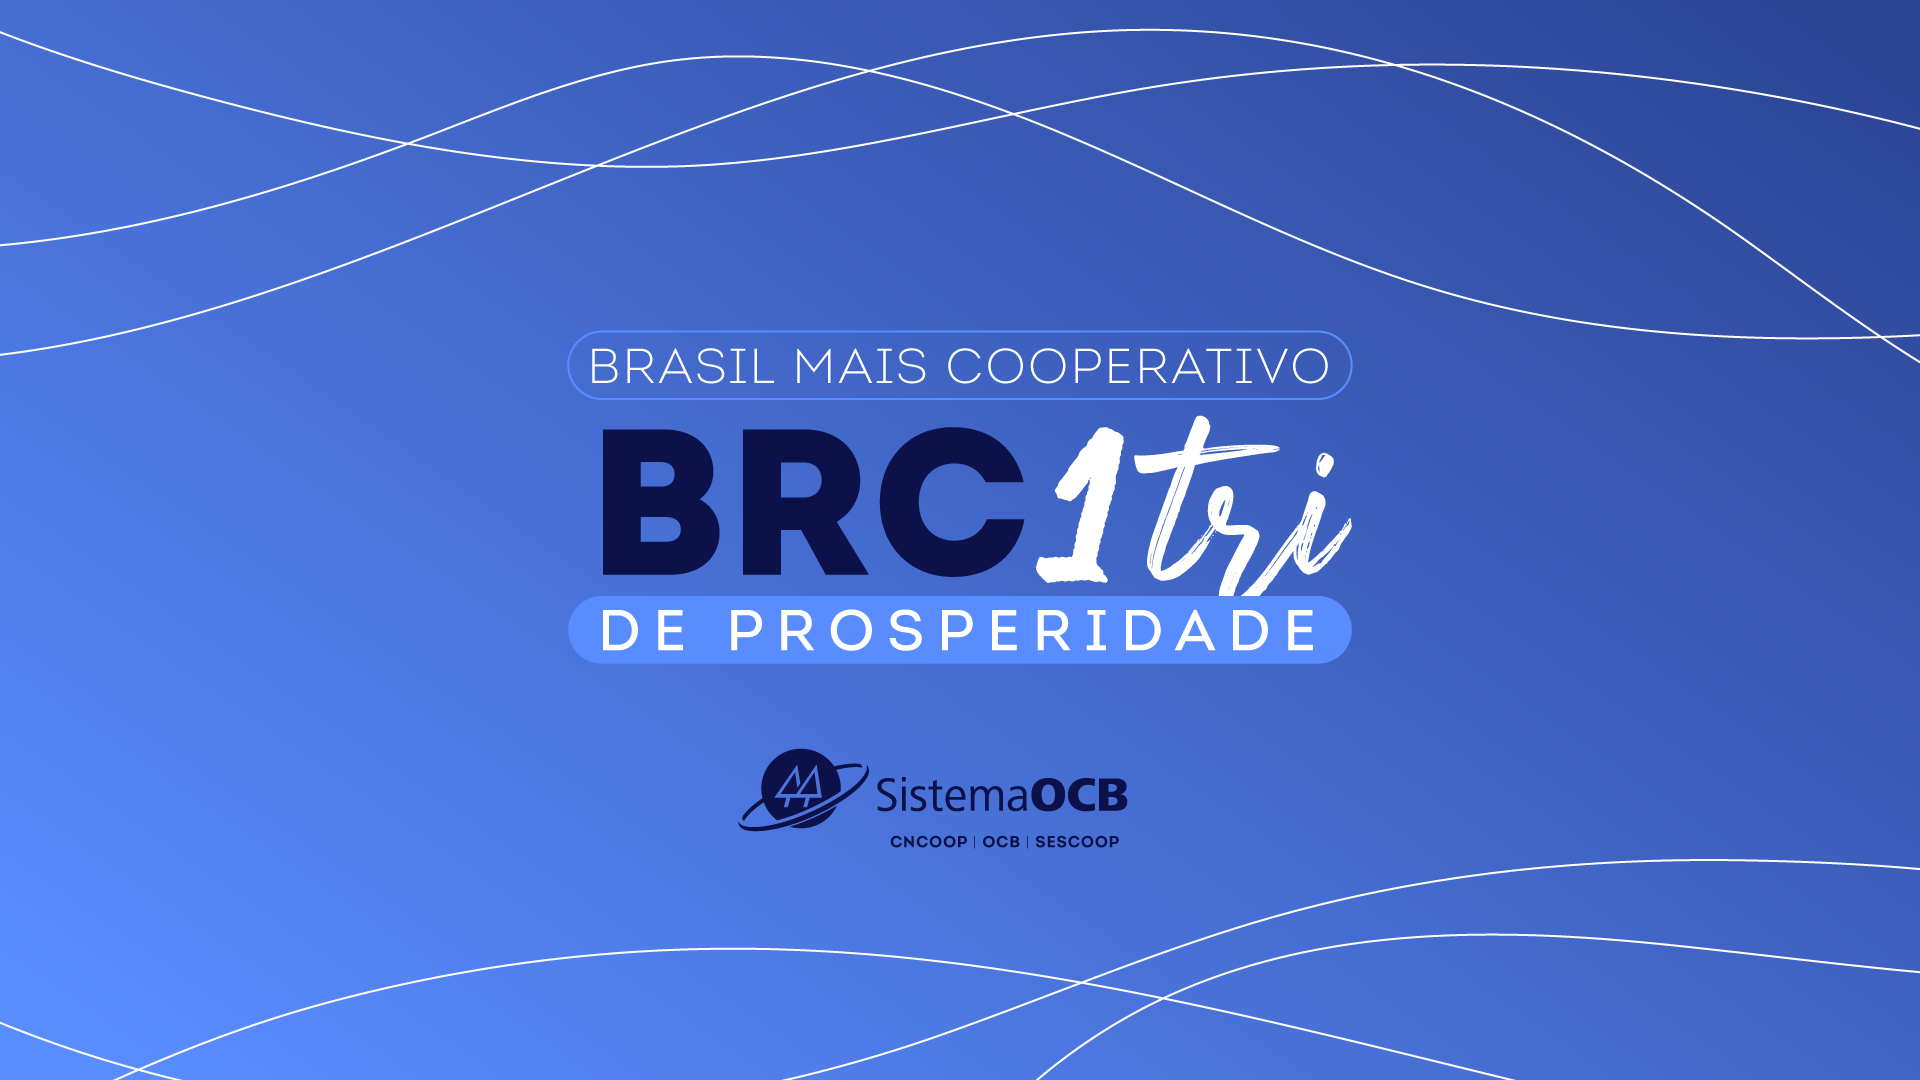 Desafio BRC 1 Tri de Prosperidade: é o coop fazendo mais pelos brasileiros